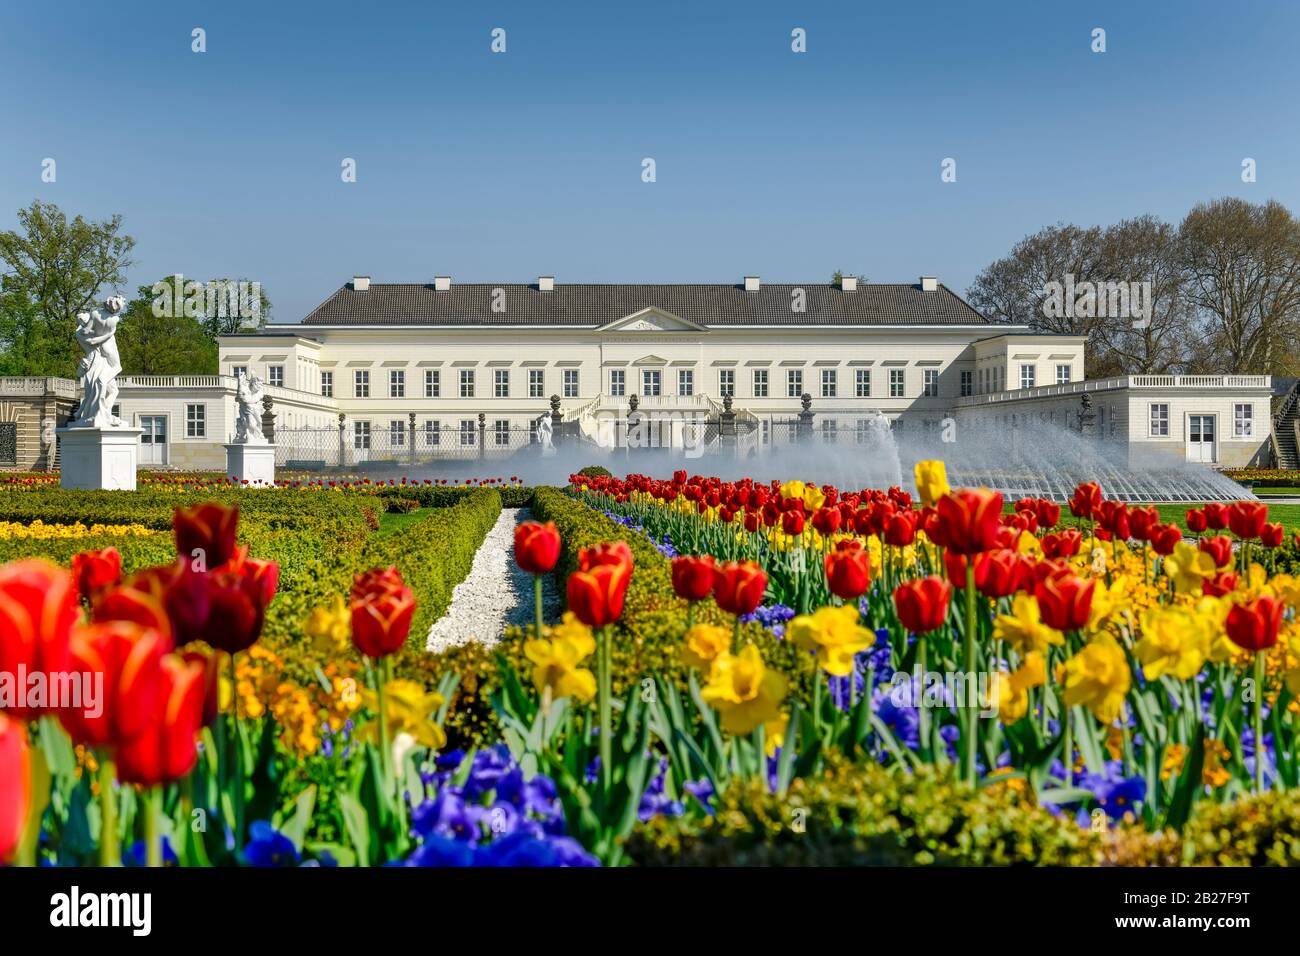 Tulpenbeete, Glockenfontäne, Schloß, Großer Garten, Herrenhäuser Gärten, Hanovre, Niedersachsen, Allemagne Banque D'Images